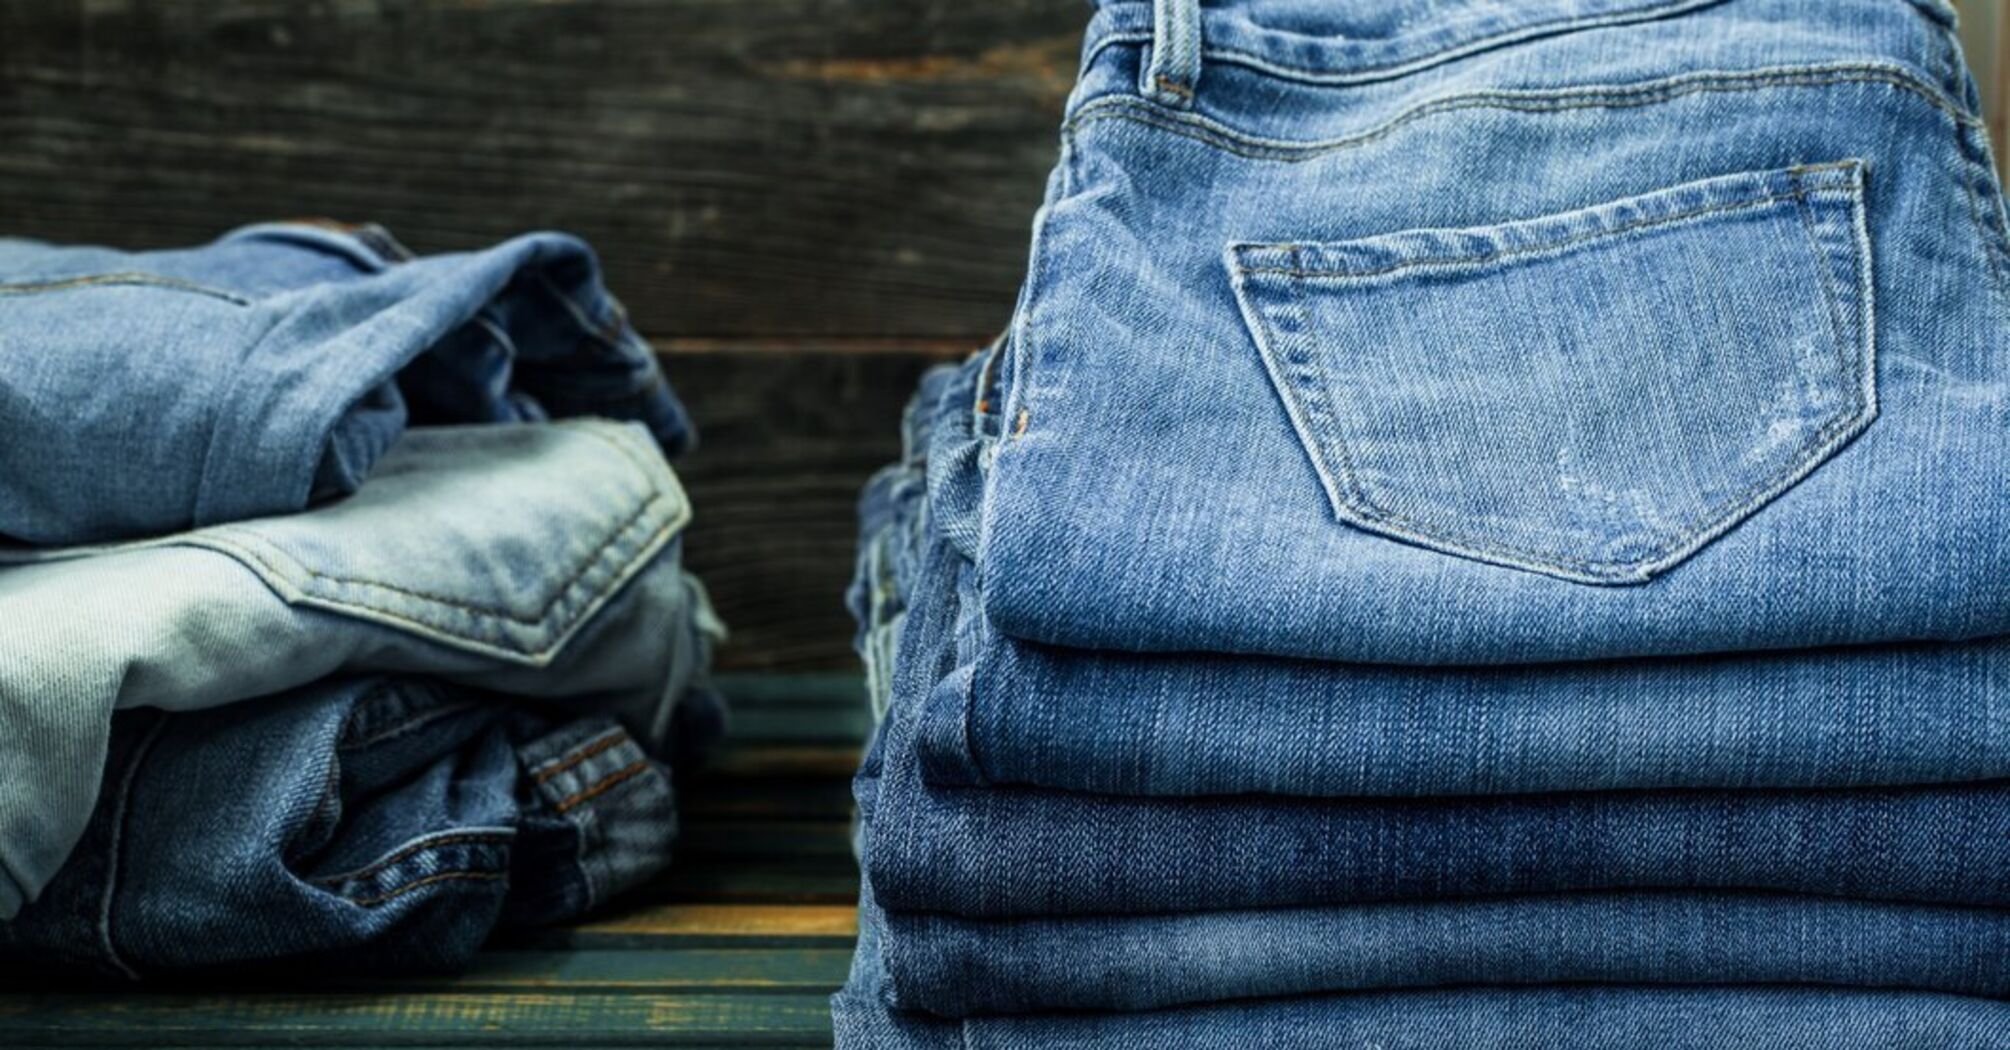 Як правильно прати джинси: 4 поради від експертів